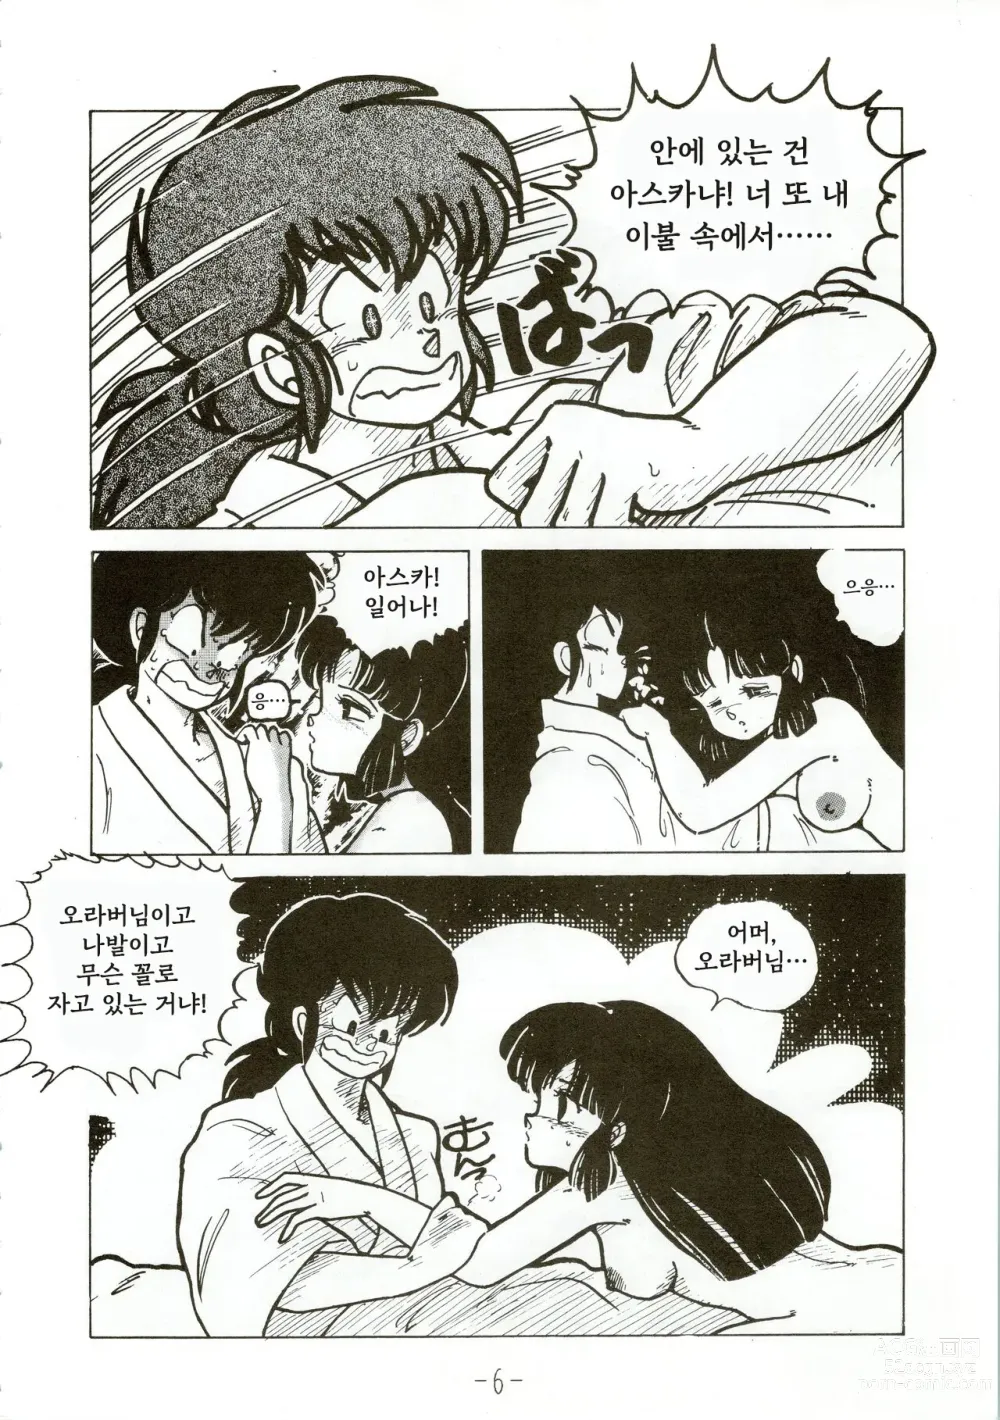 Page 6 of doujinshi Kacchuu Densetsu